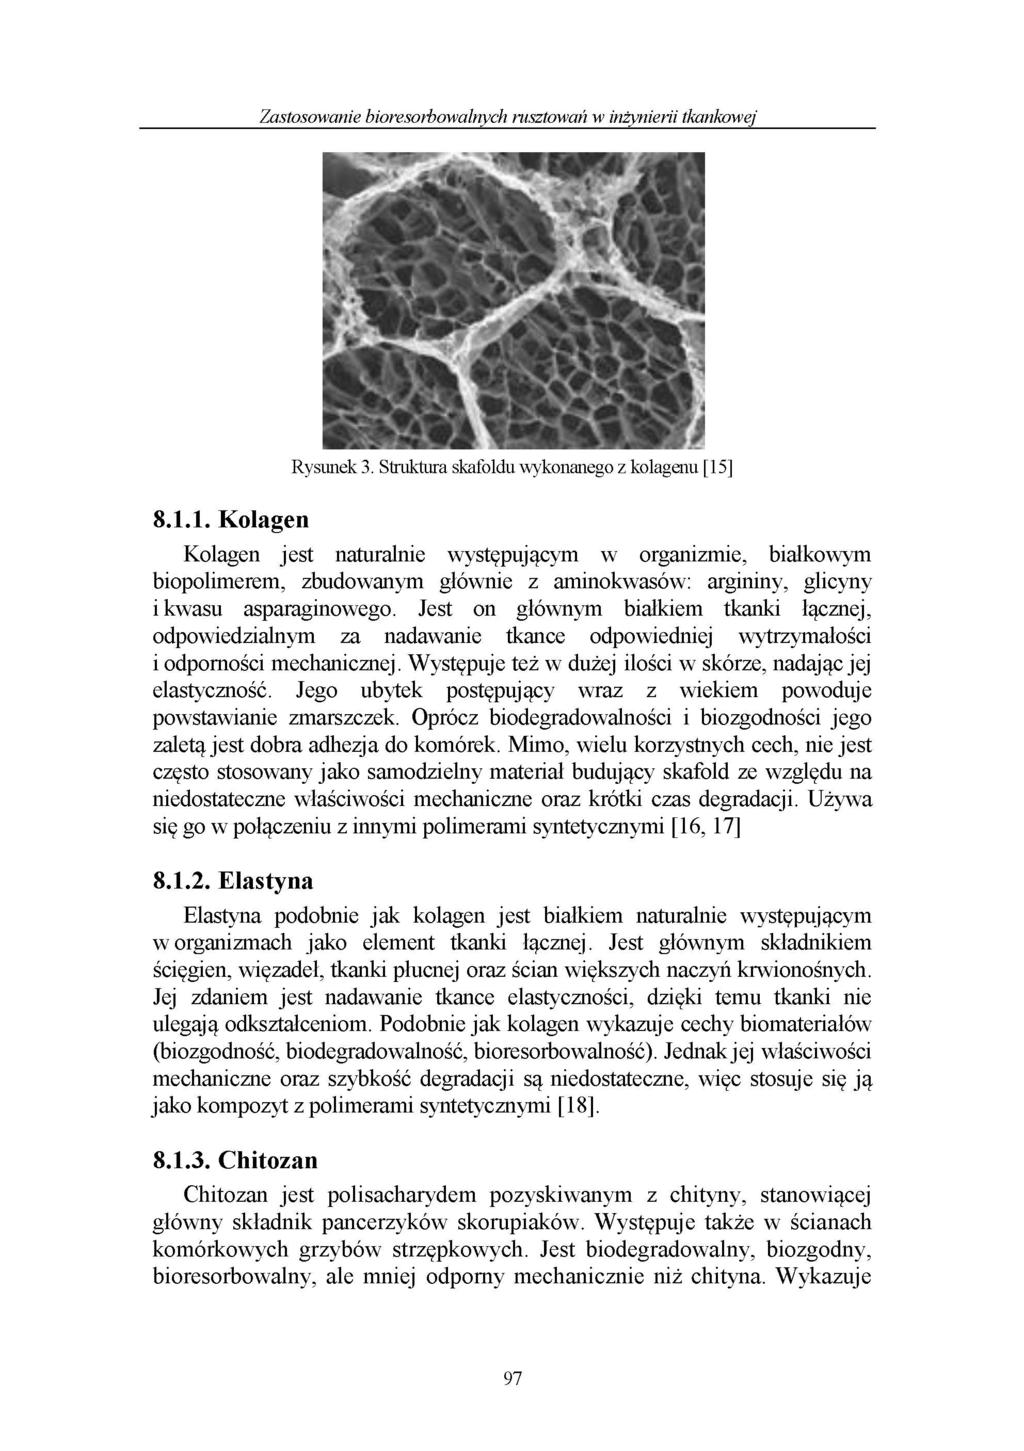 Zastosowanie bioresorbowalnych rusztowań w inżynierii tkankowej 8.1.1. Kolagen Rysunek 3.